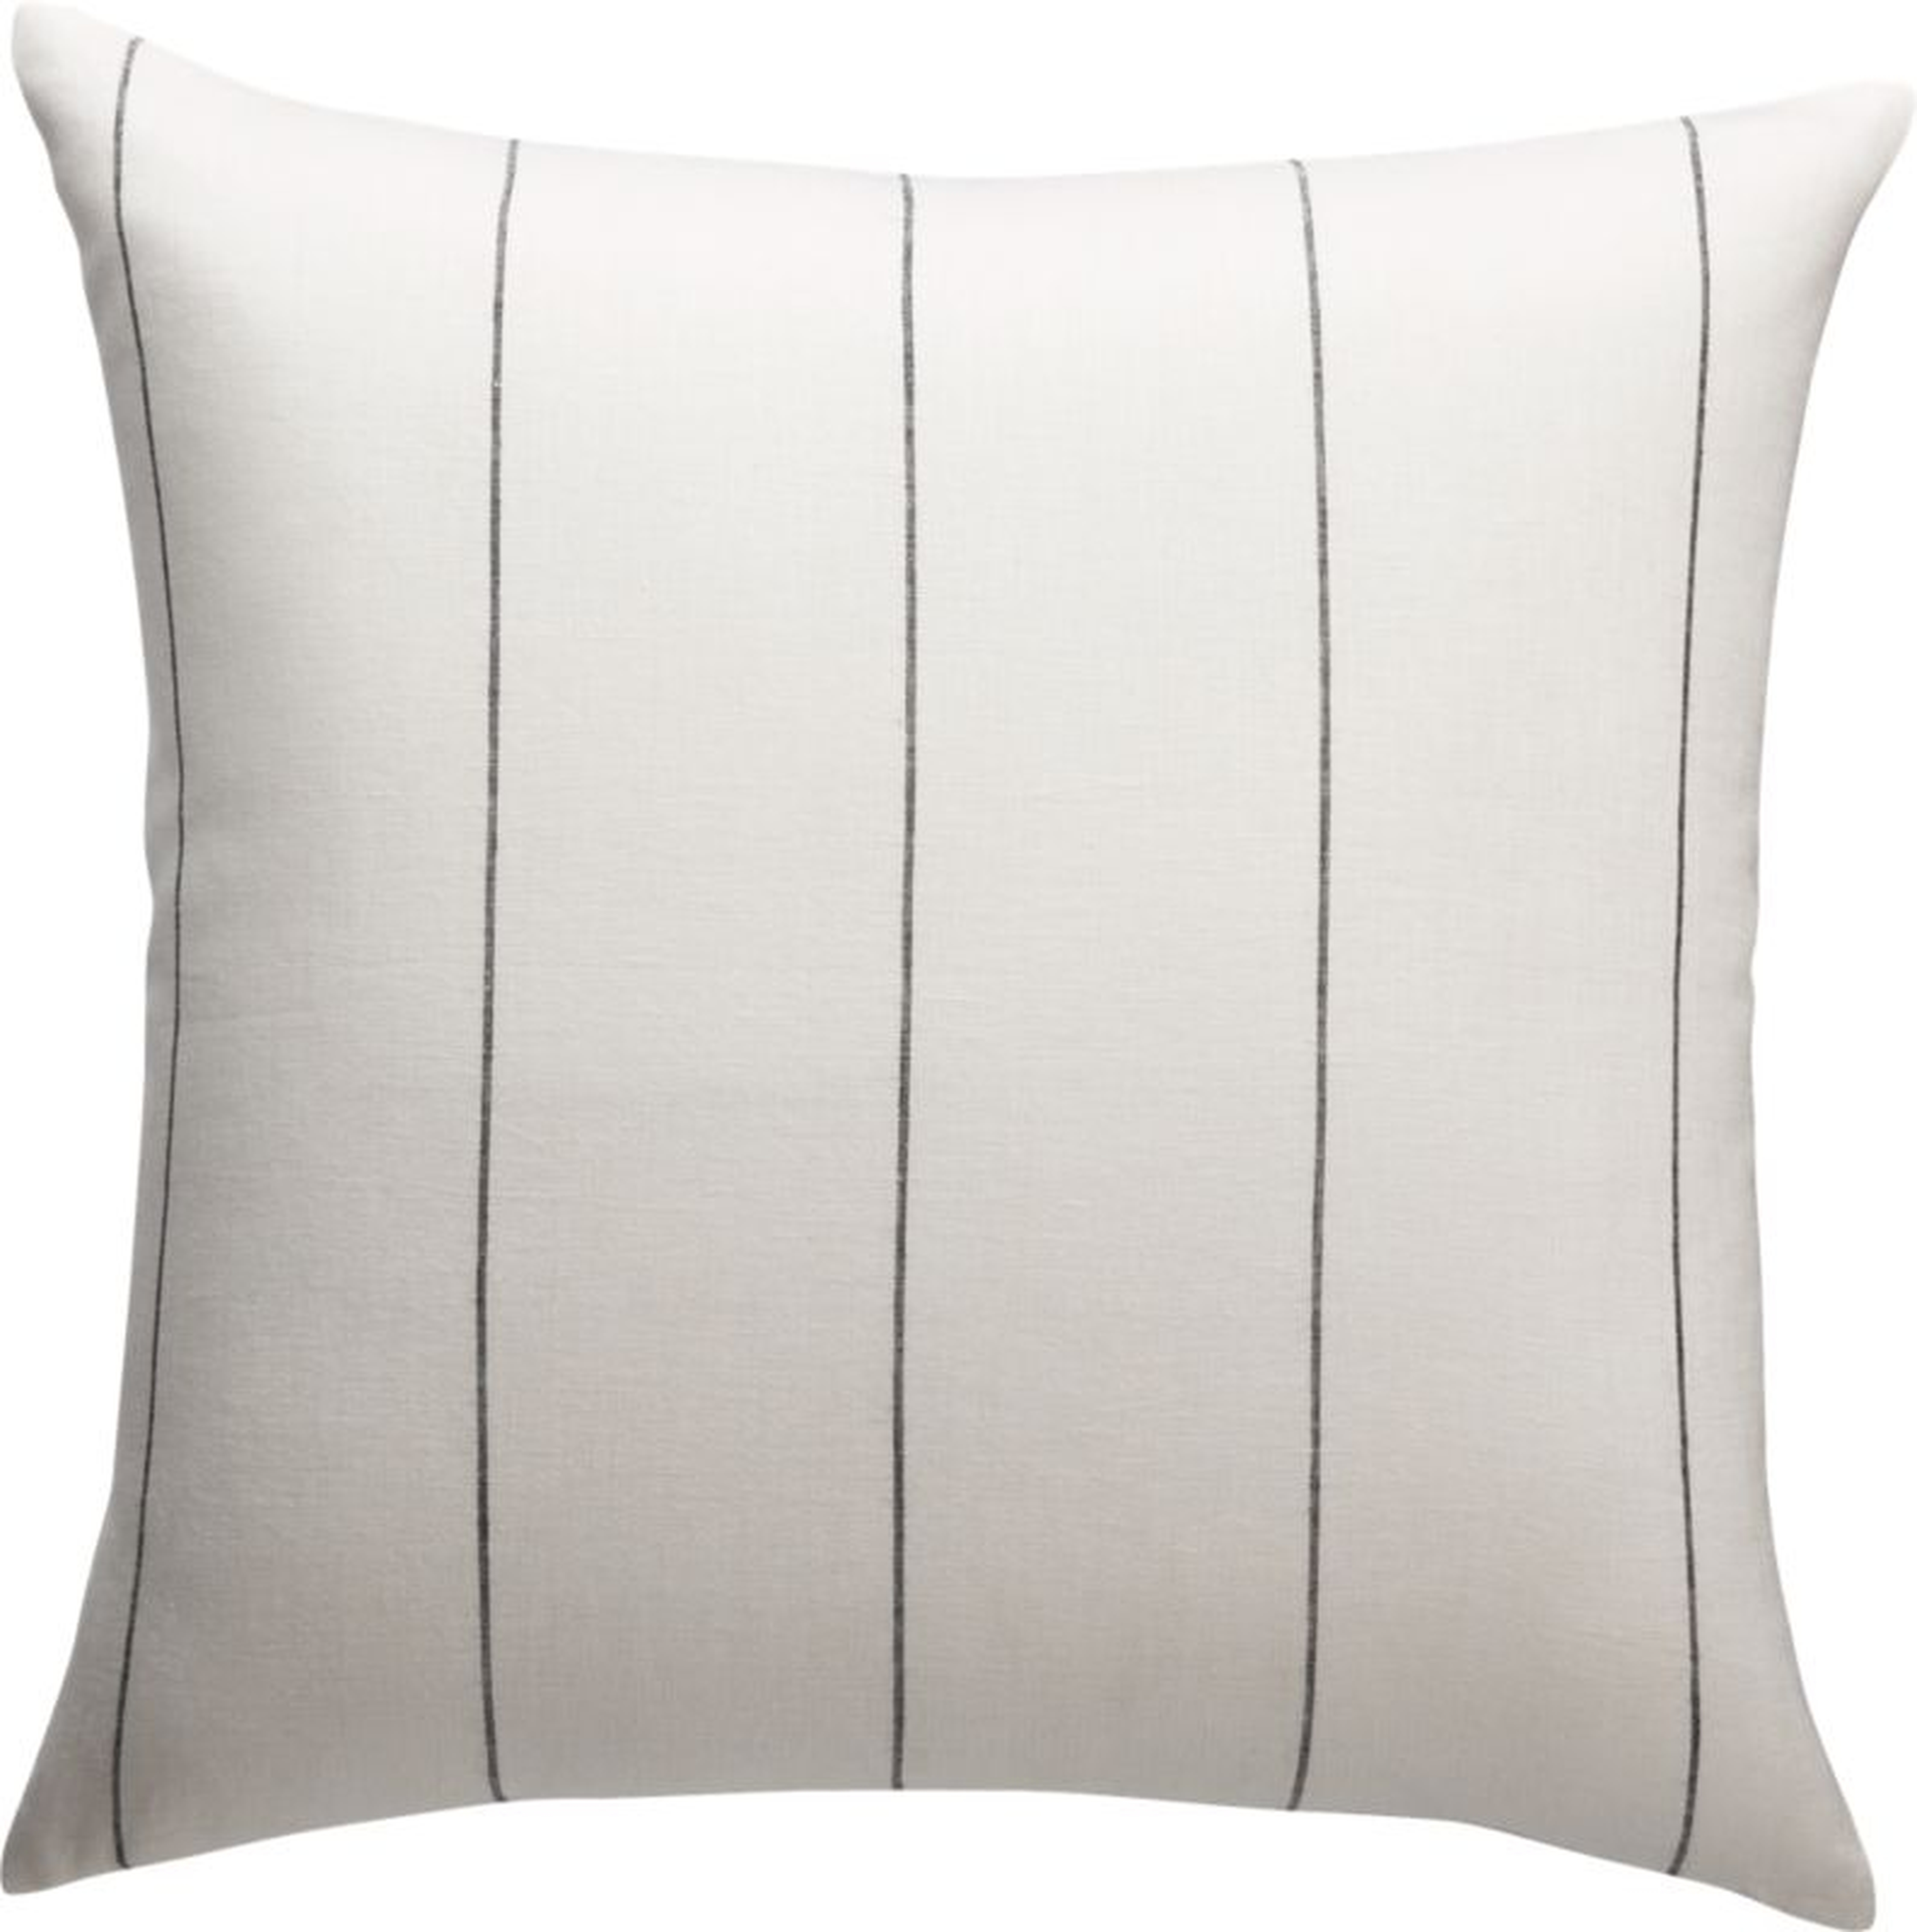 Pinstripe Linen Pillow, White, 20" x 20" - CB2